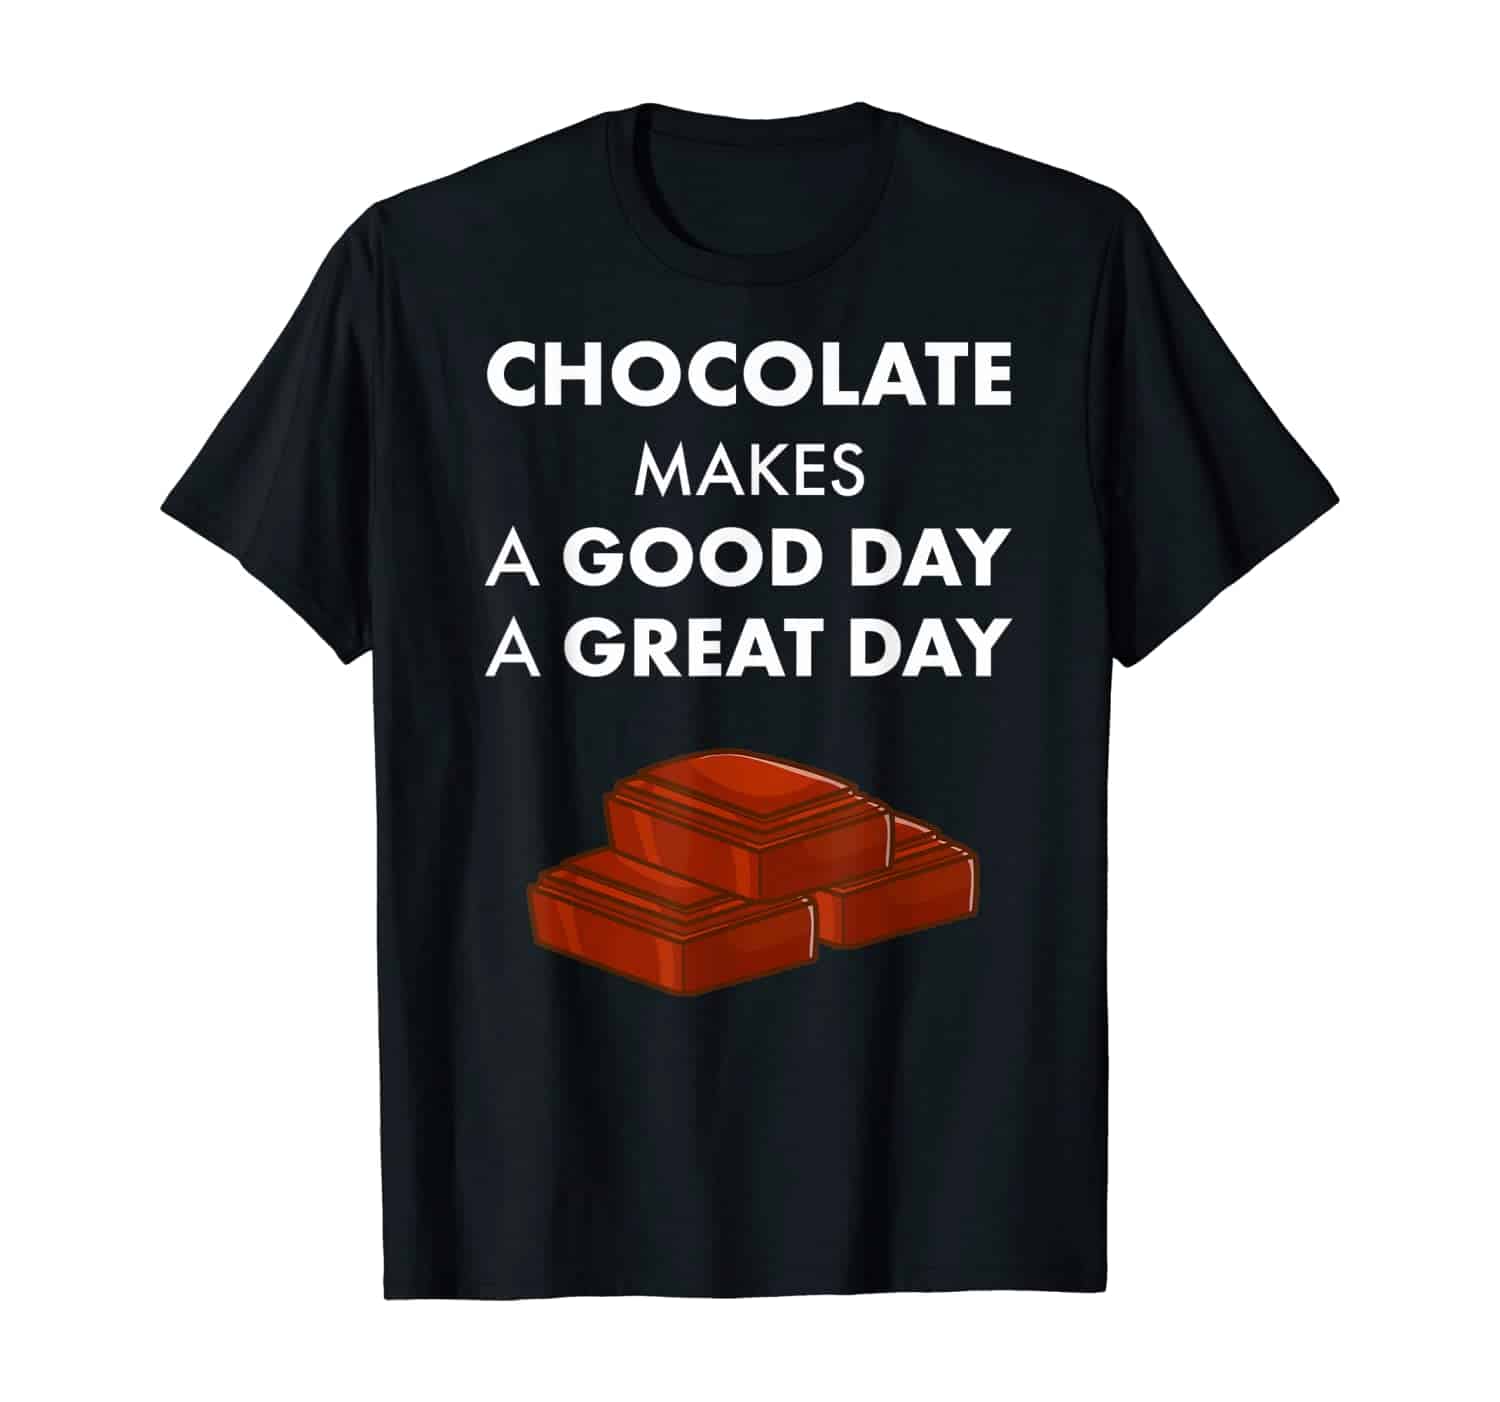 Schokolade, Schoko, Süßes, Vollmilchschokolade, weiße Schokolade, Schokofan, Schoko Fan, Schokopralinen, Schokoladenkuchen, T-Shirt, T-Shirt Design, T-Shirt Motiv, T-Shirt Designer, Geschenk, Geschenkidee